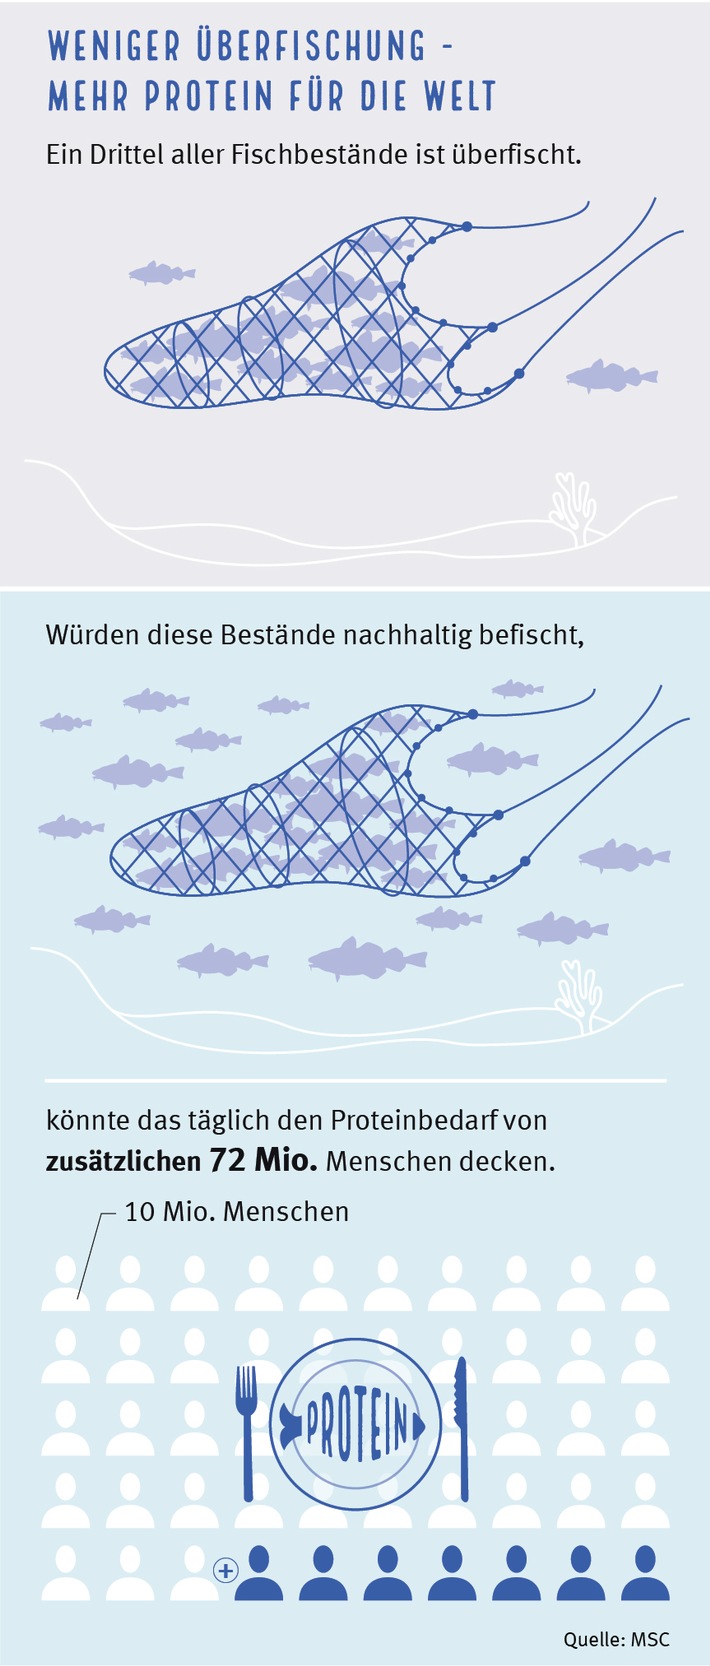 Mehr Fisch bis 2050? / Aktuelle Analyse zeigt: Überfischung der Meere kostet uns jährlich wertvolles Protein für 72 Mio. Menschen